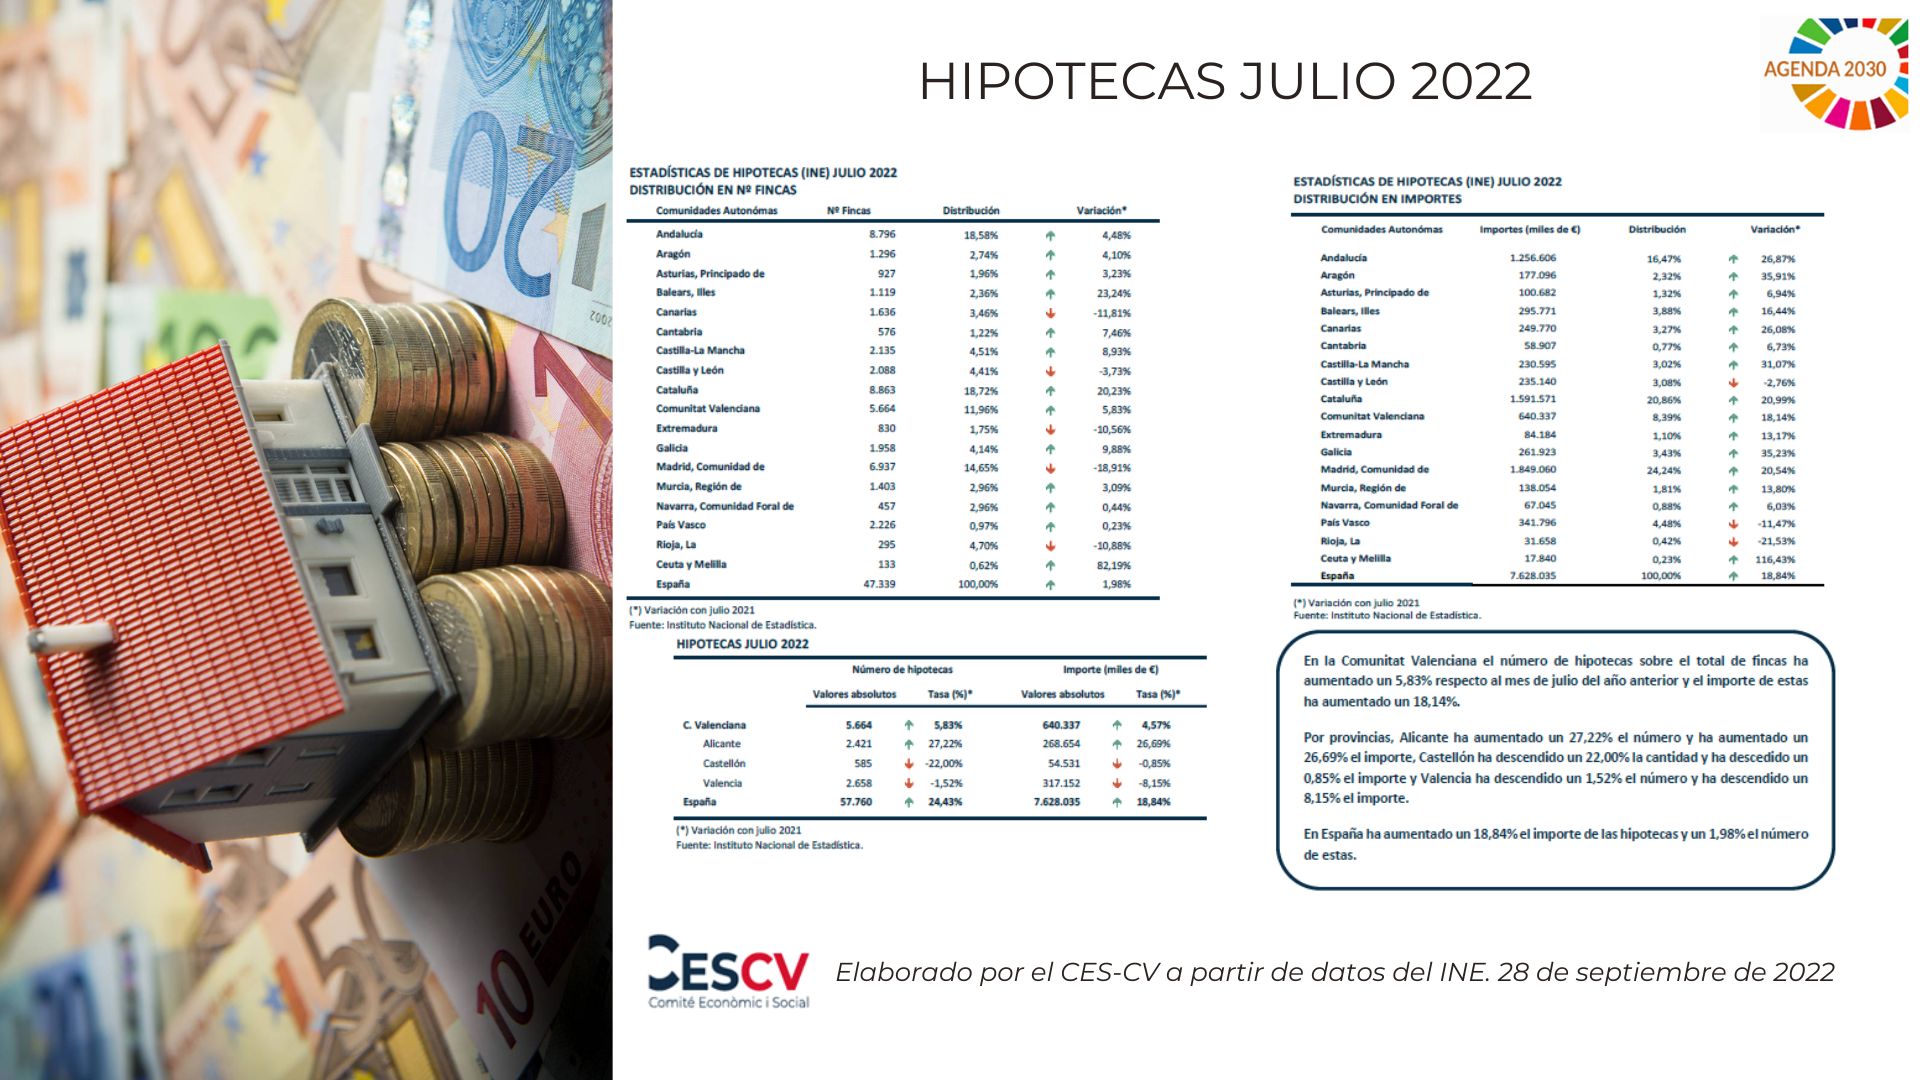 HIPOTECAS JULIO 2022